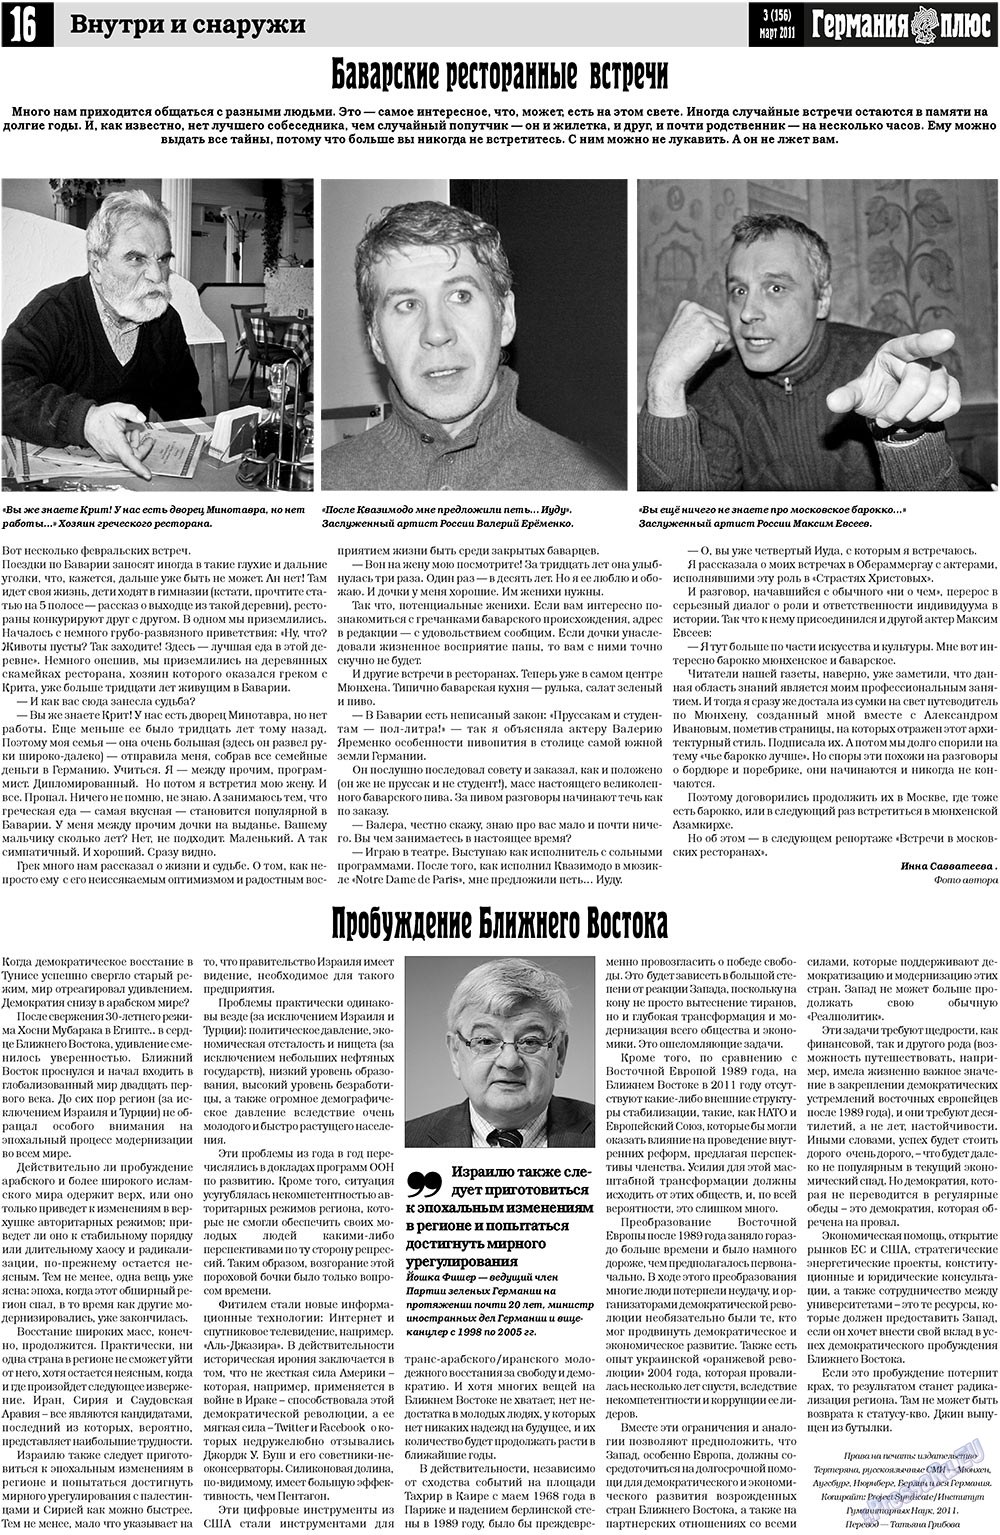 Германия плюс, газета. 2011 №3 стр.16